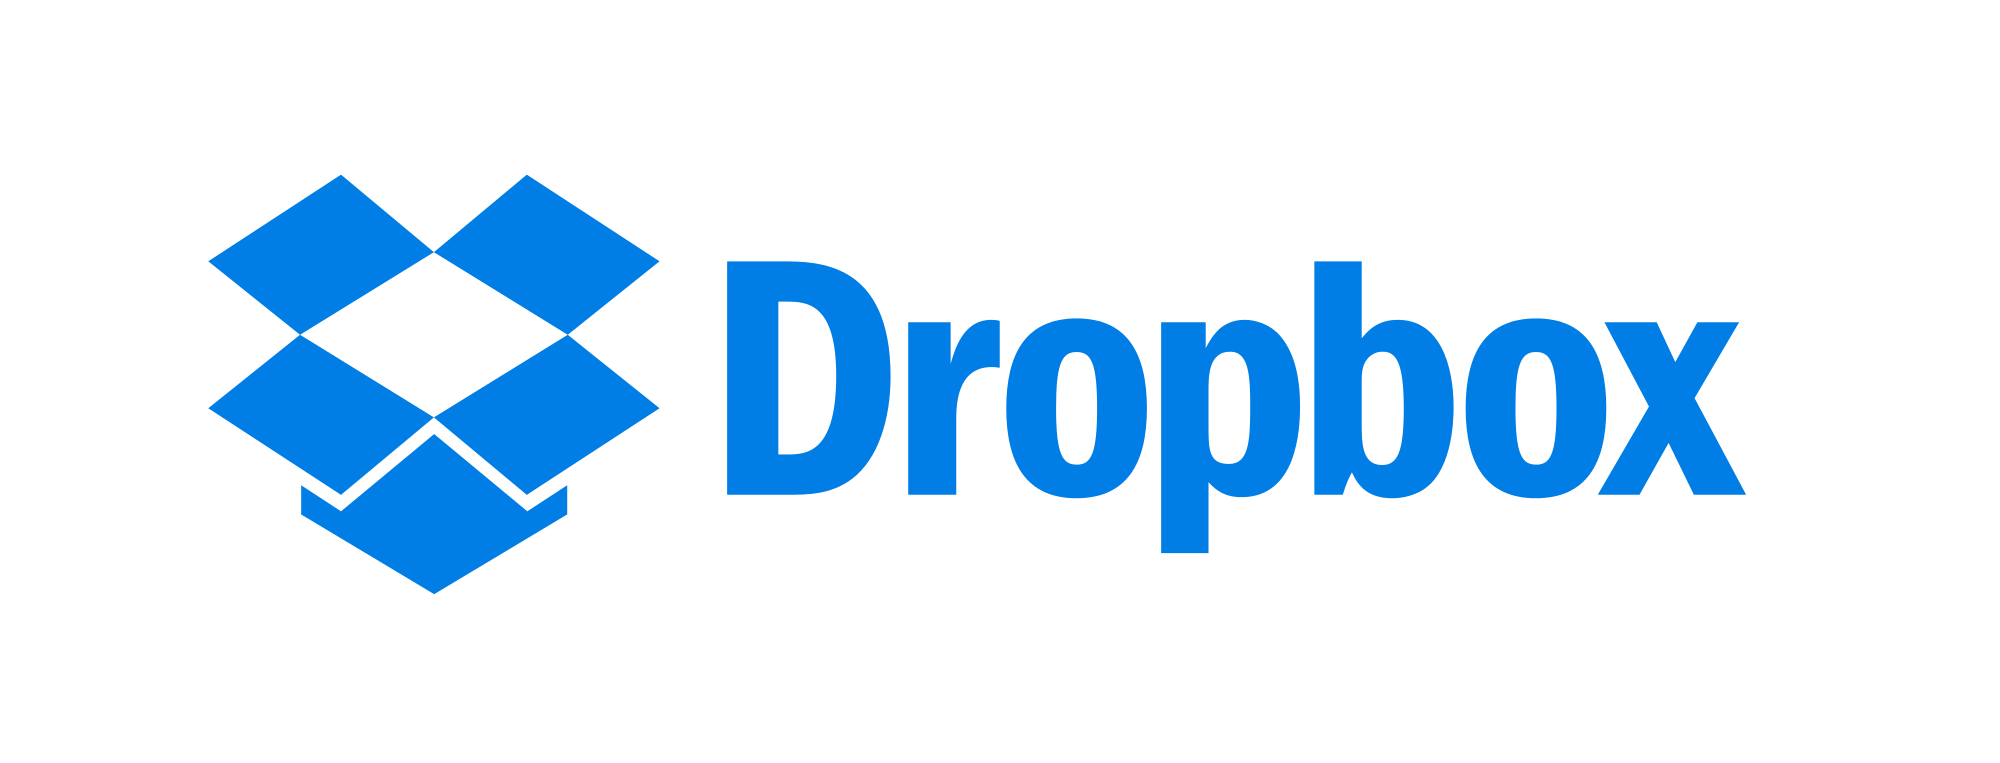 Come recuperare file eliminati da Dropbox